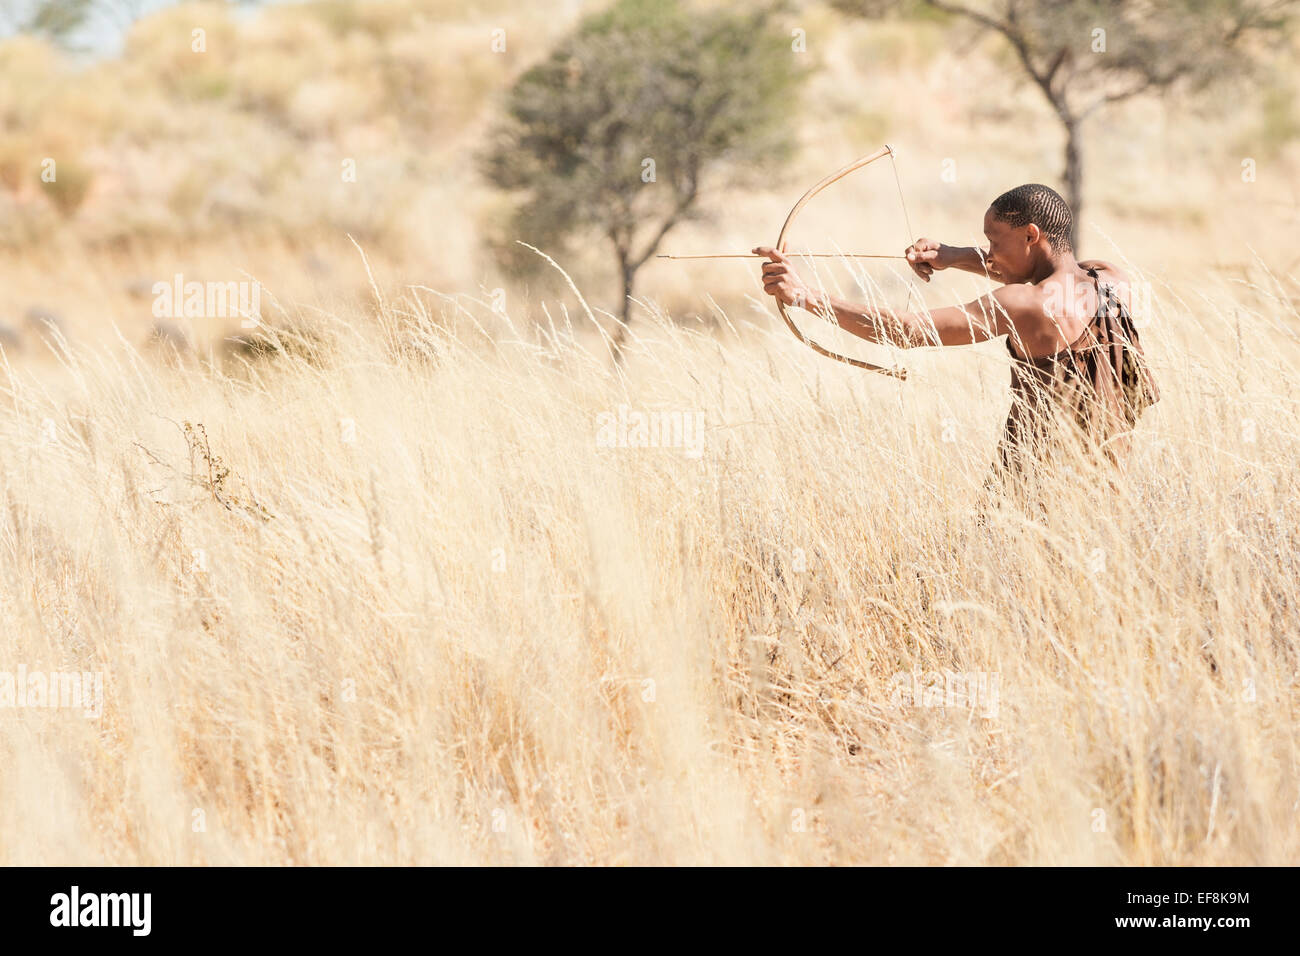 Un comité permanent dans les hautes herbes Bushmen du Kalahari utilise un arc et une flèche à la chasse, le sud de la Namibie, l'Afrique Banque D'Images